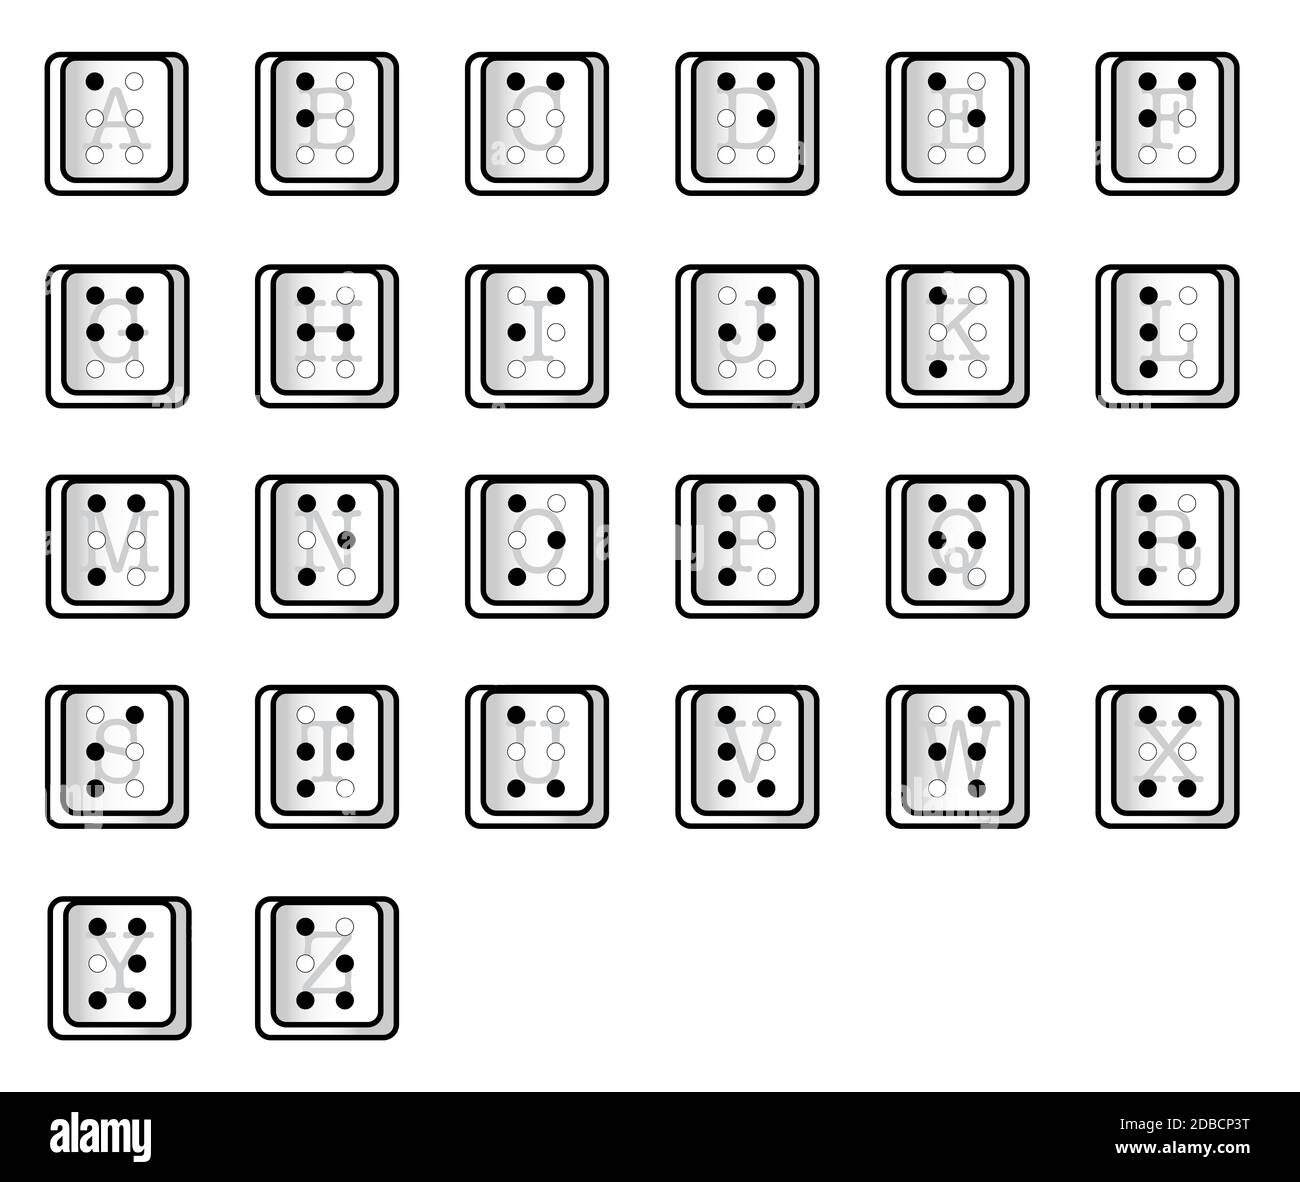 Alfabeto Braille Aislado Fotos E Imagenes De Stock Alamy